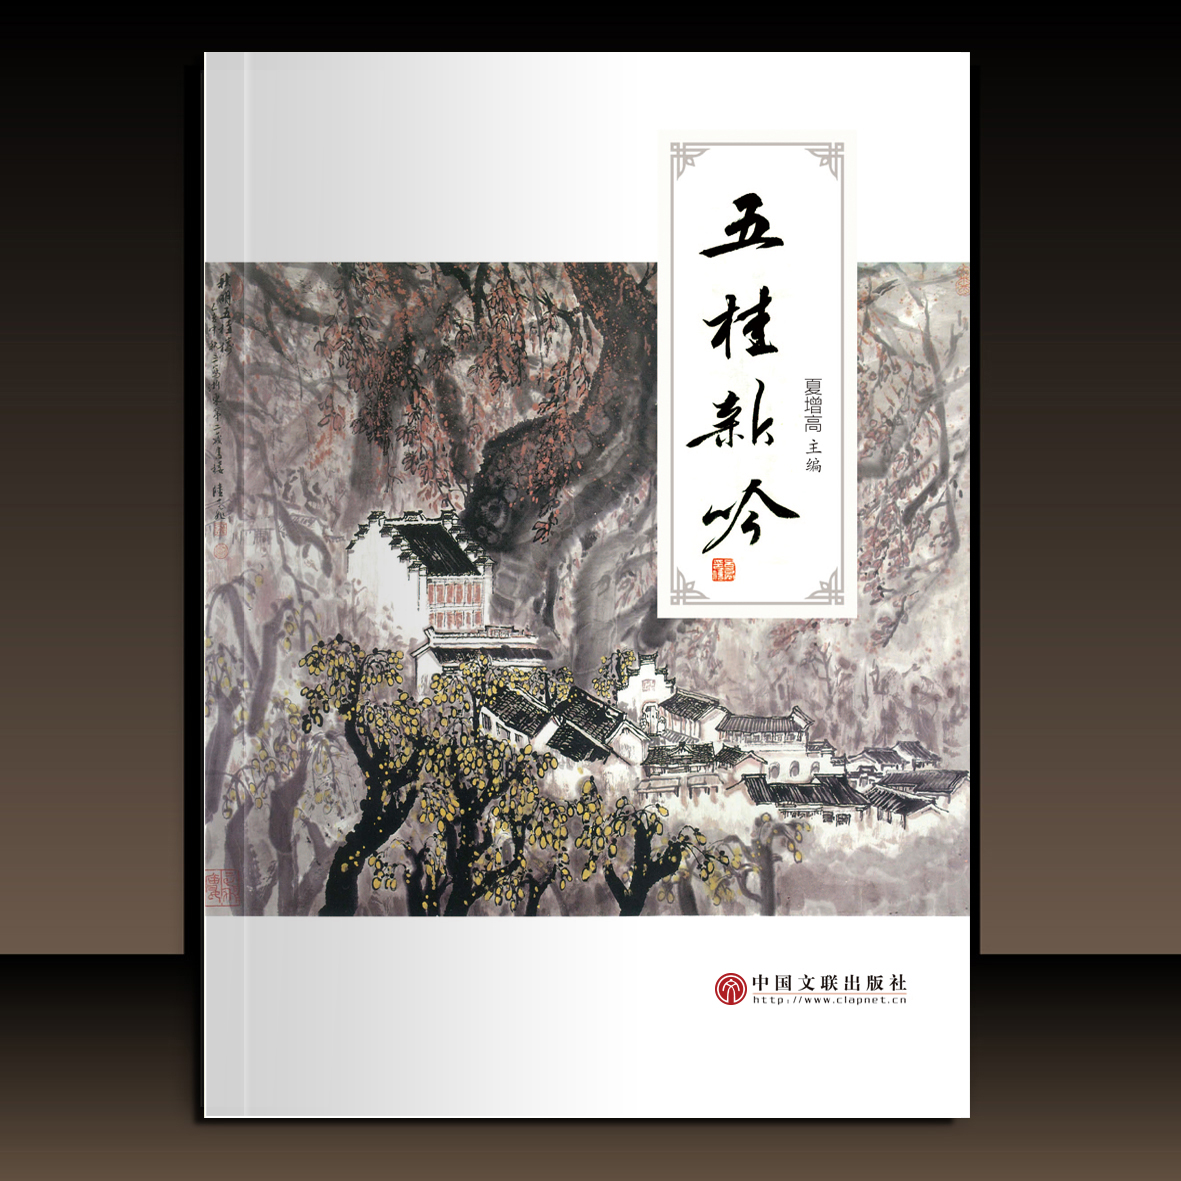 集《五桂新吟》由中国文联出版社出版发行